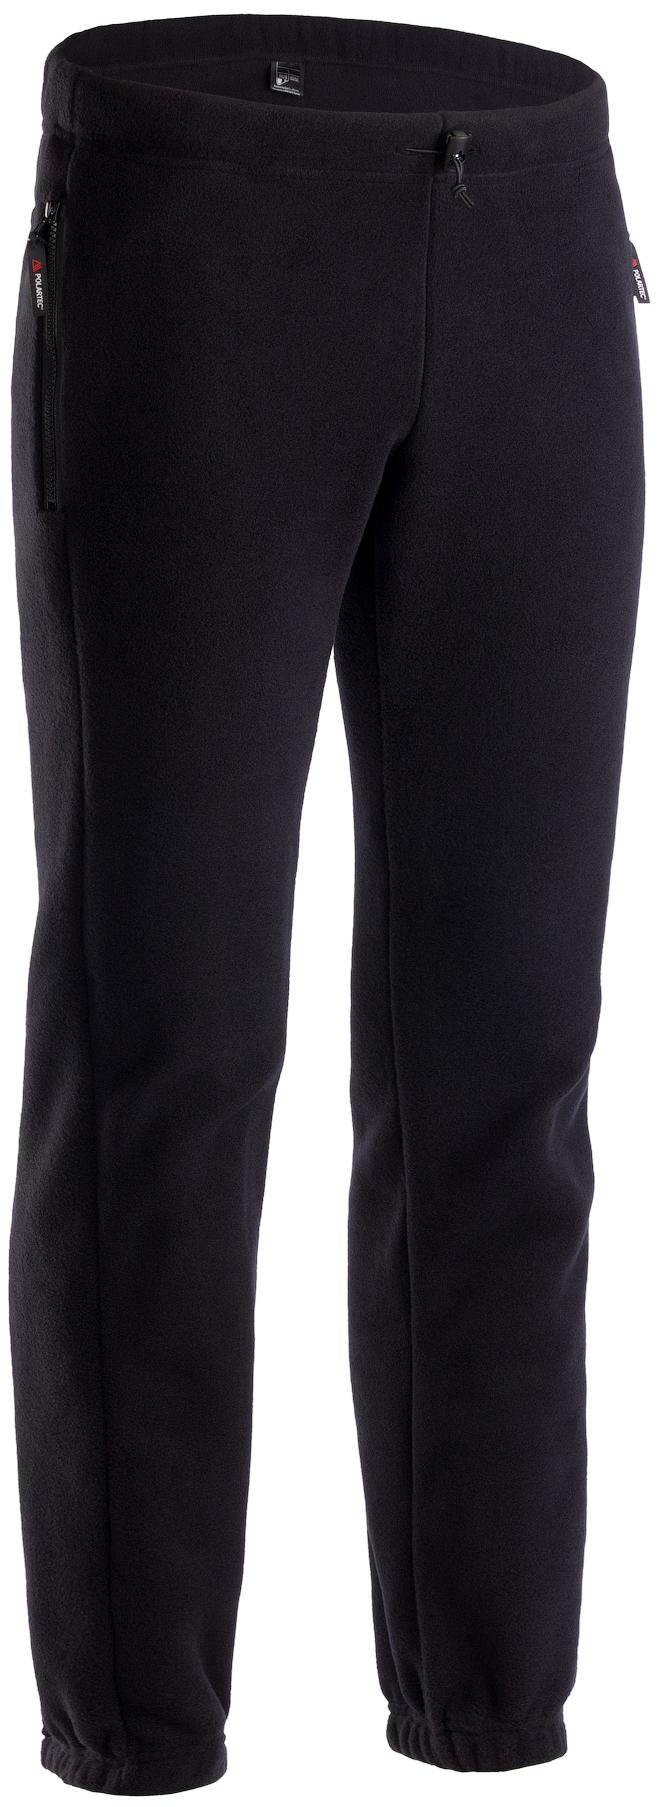 Спортивные брюки мужские Bask Valley-P черные 54